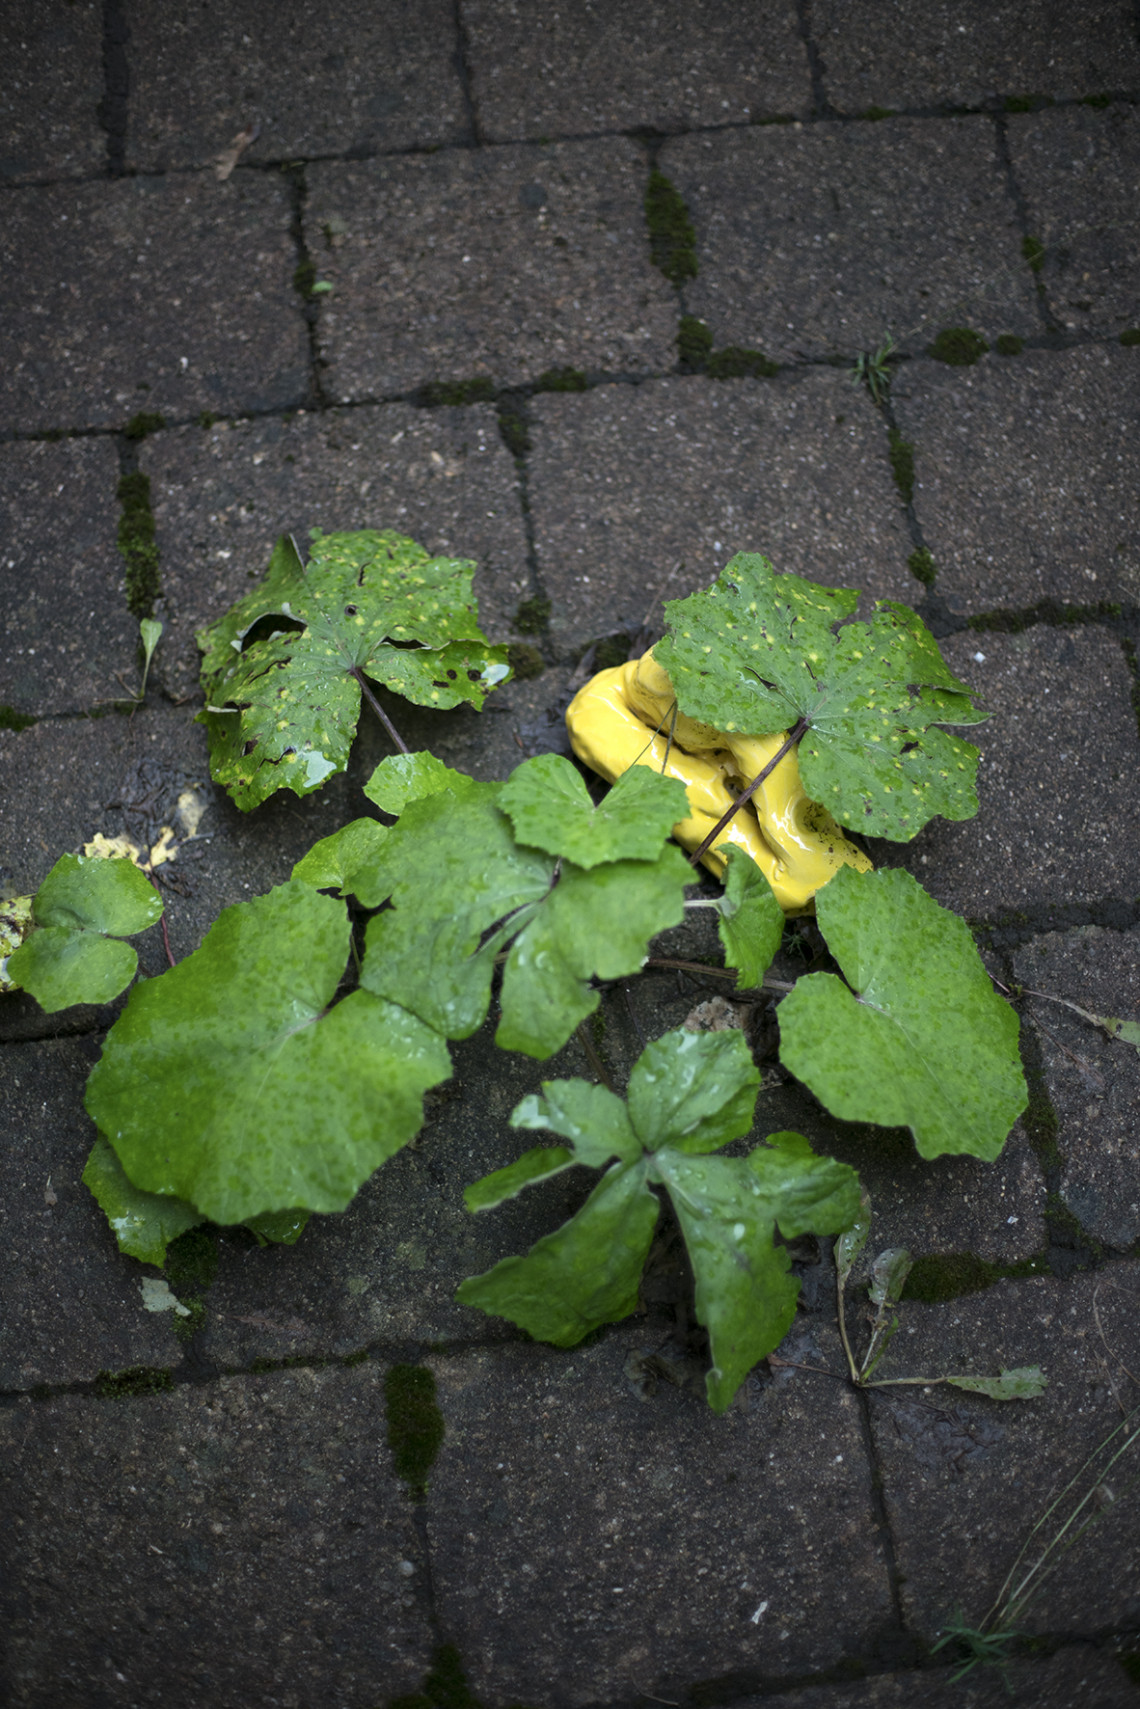 gelber Klumpen unter grüner Blattpflanze auf Pflastersteinen